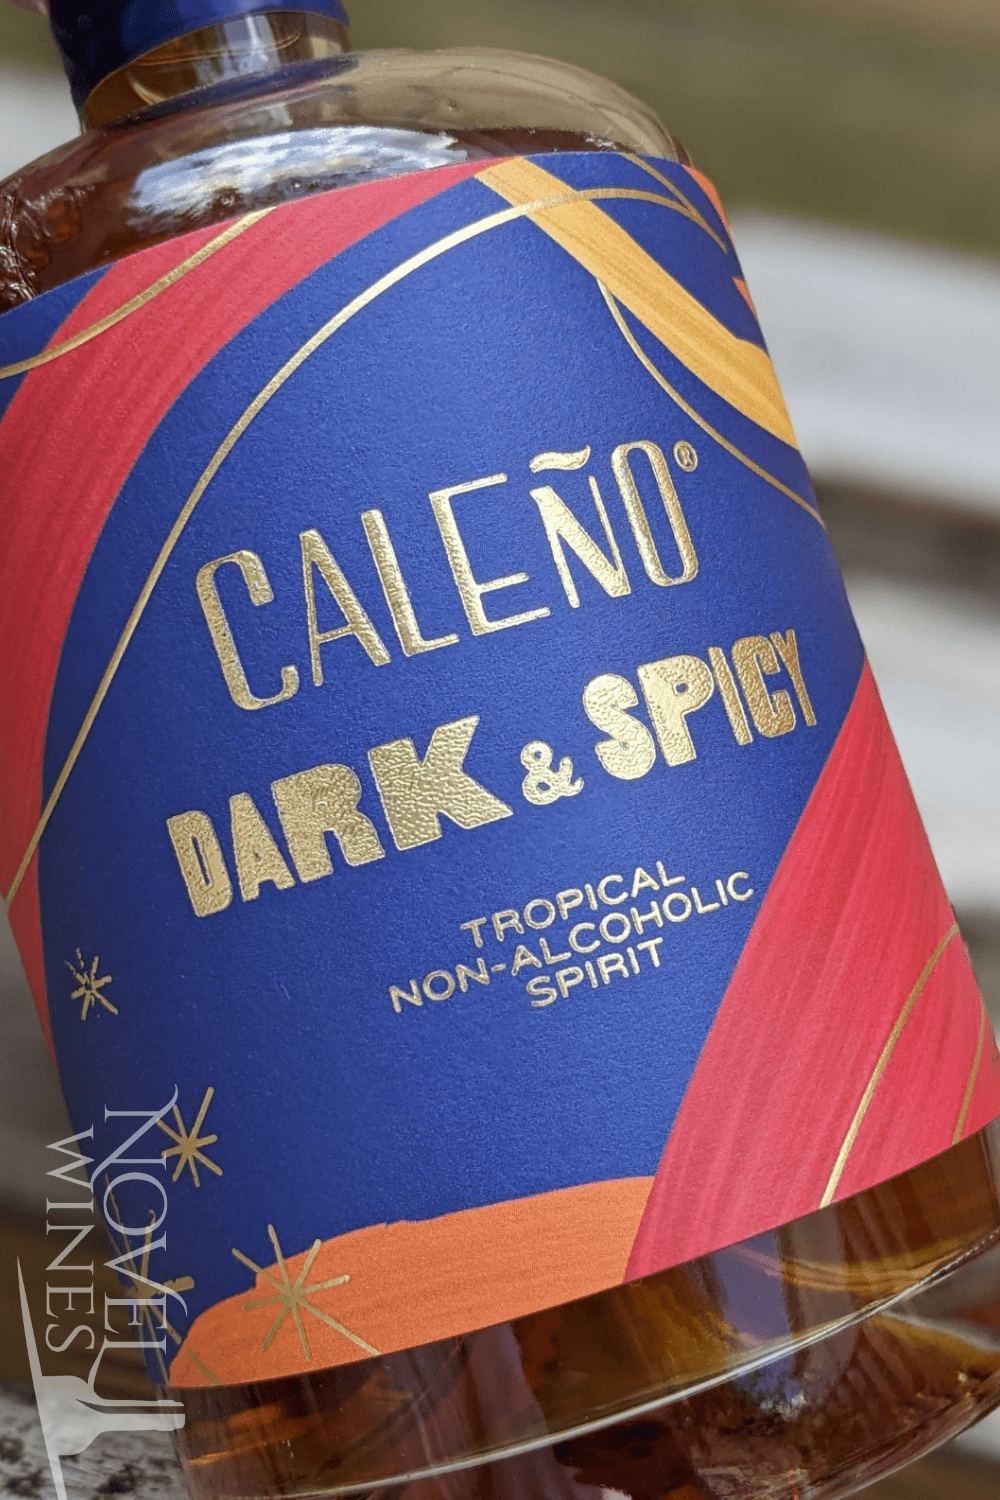 Caleño Drinks Non Alcoholic Caleño Dark & Spicy Non-Alcoholic Spirit 0.0%, England